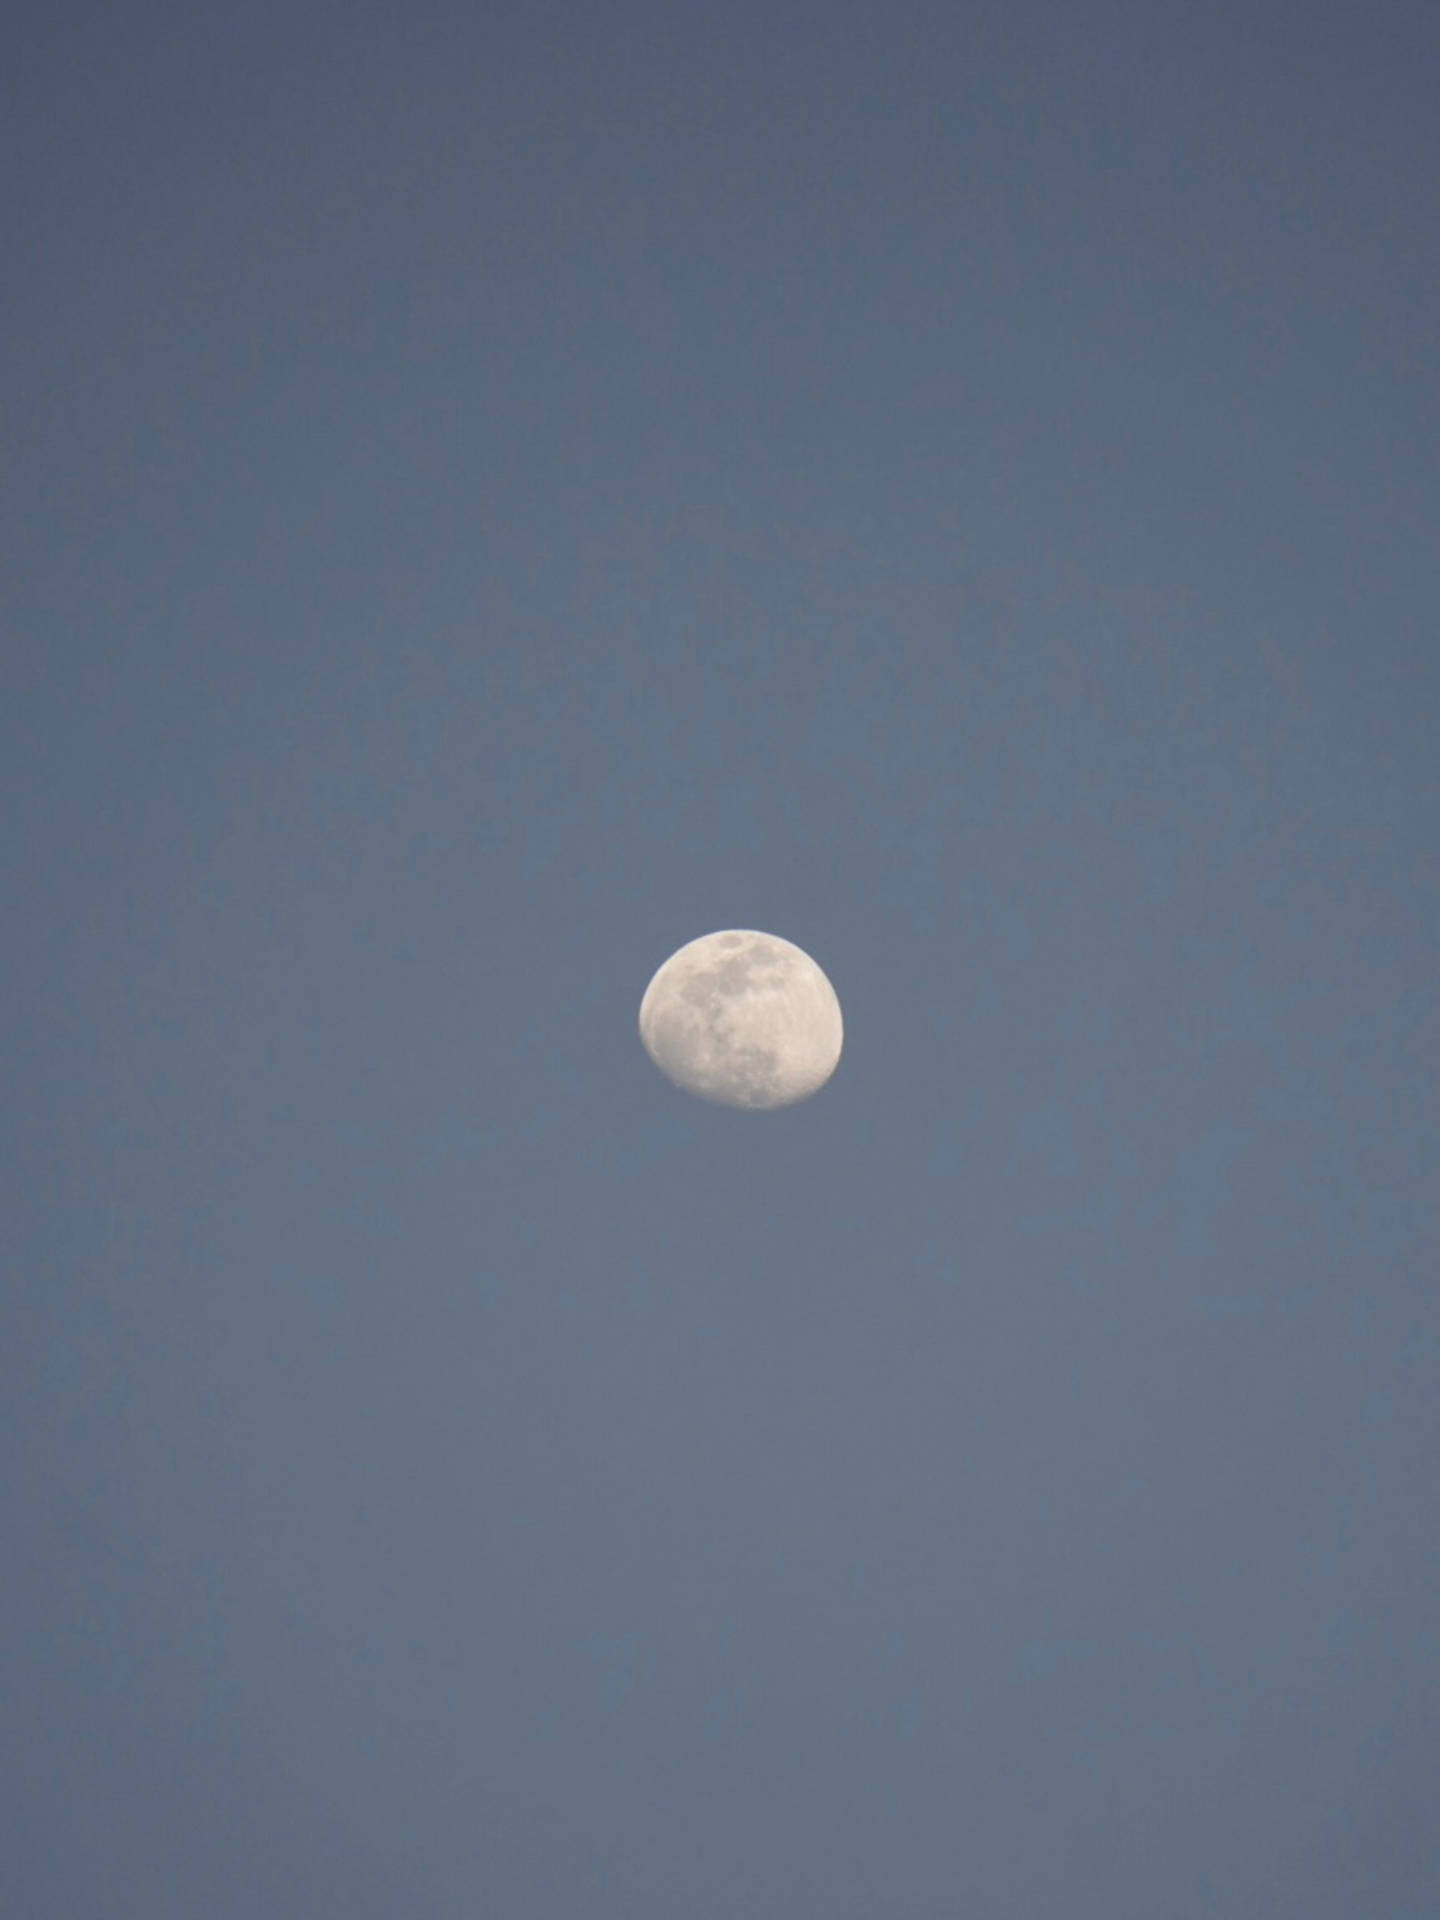 Hd Moon In The Gray Sky Wallpaper